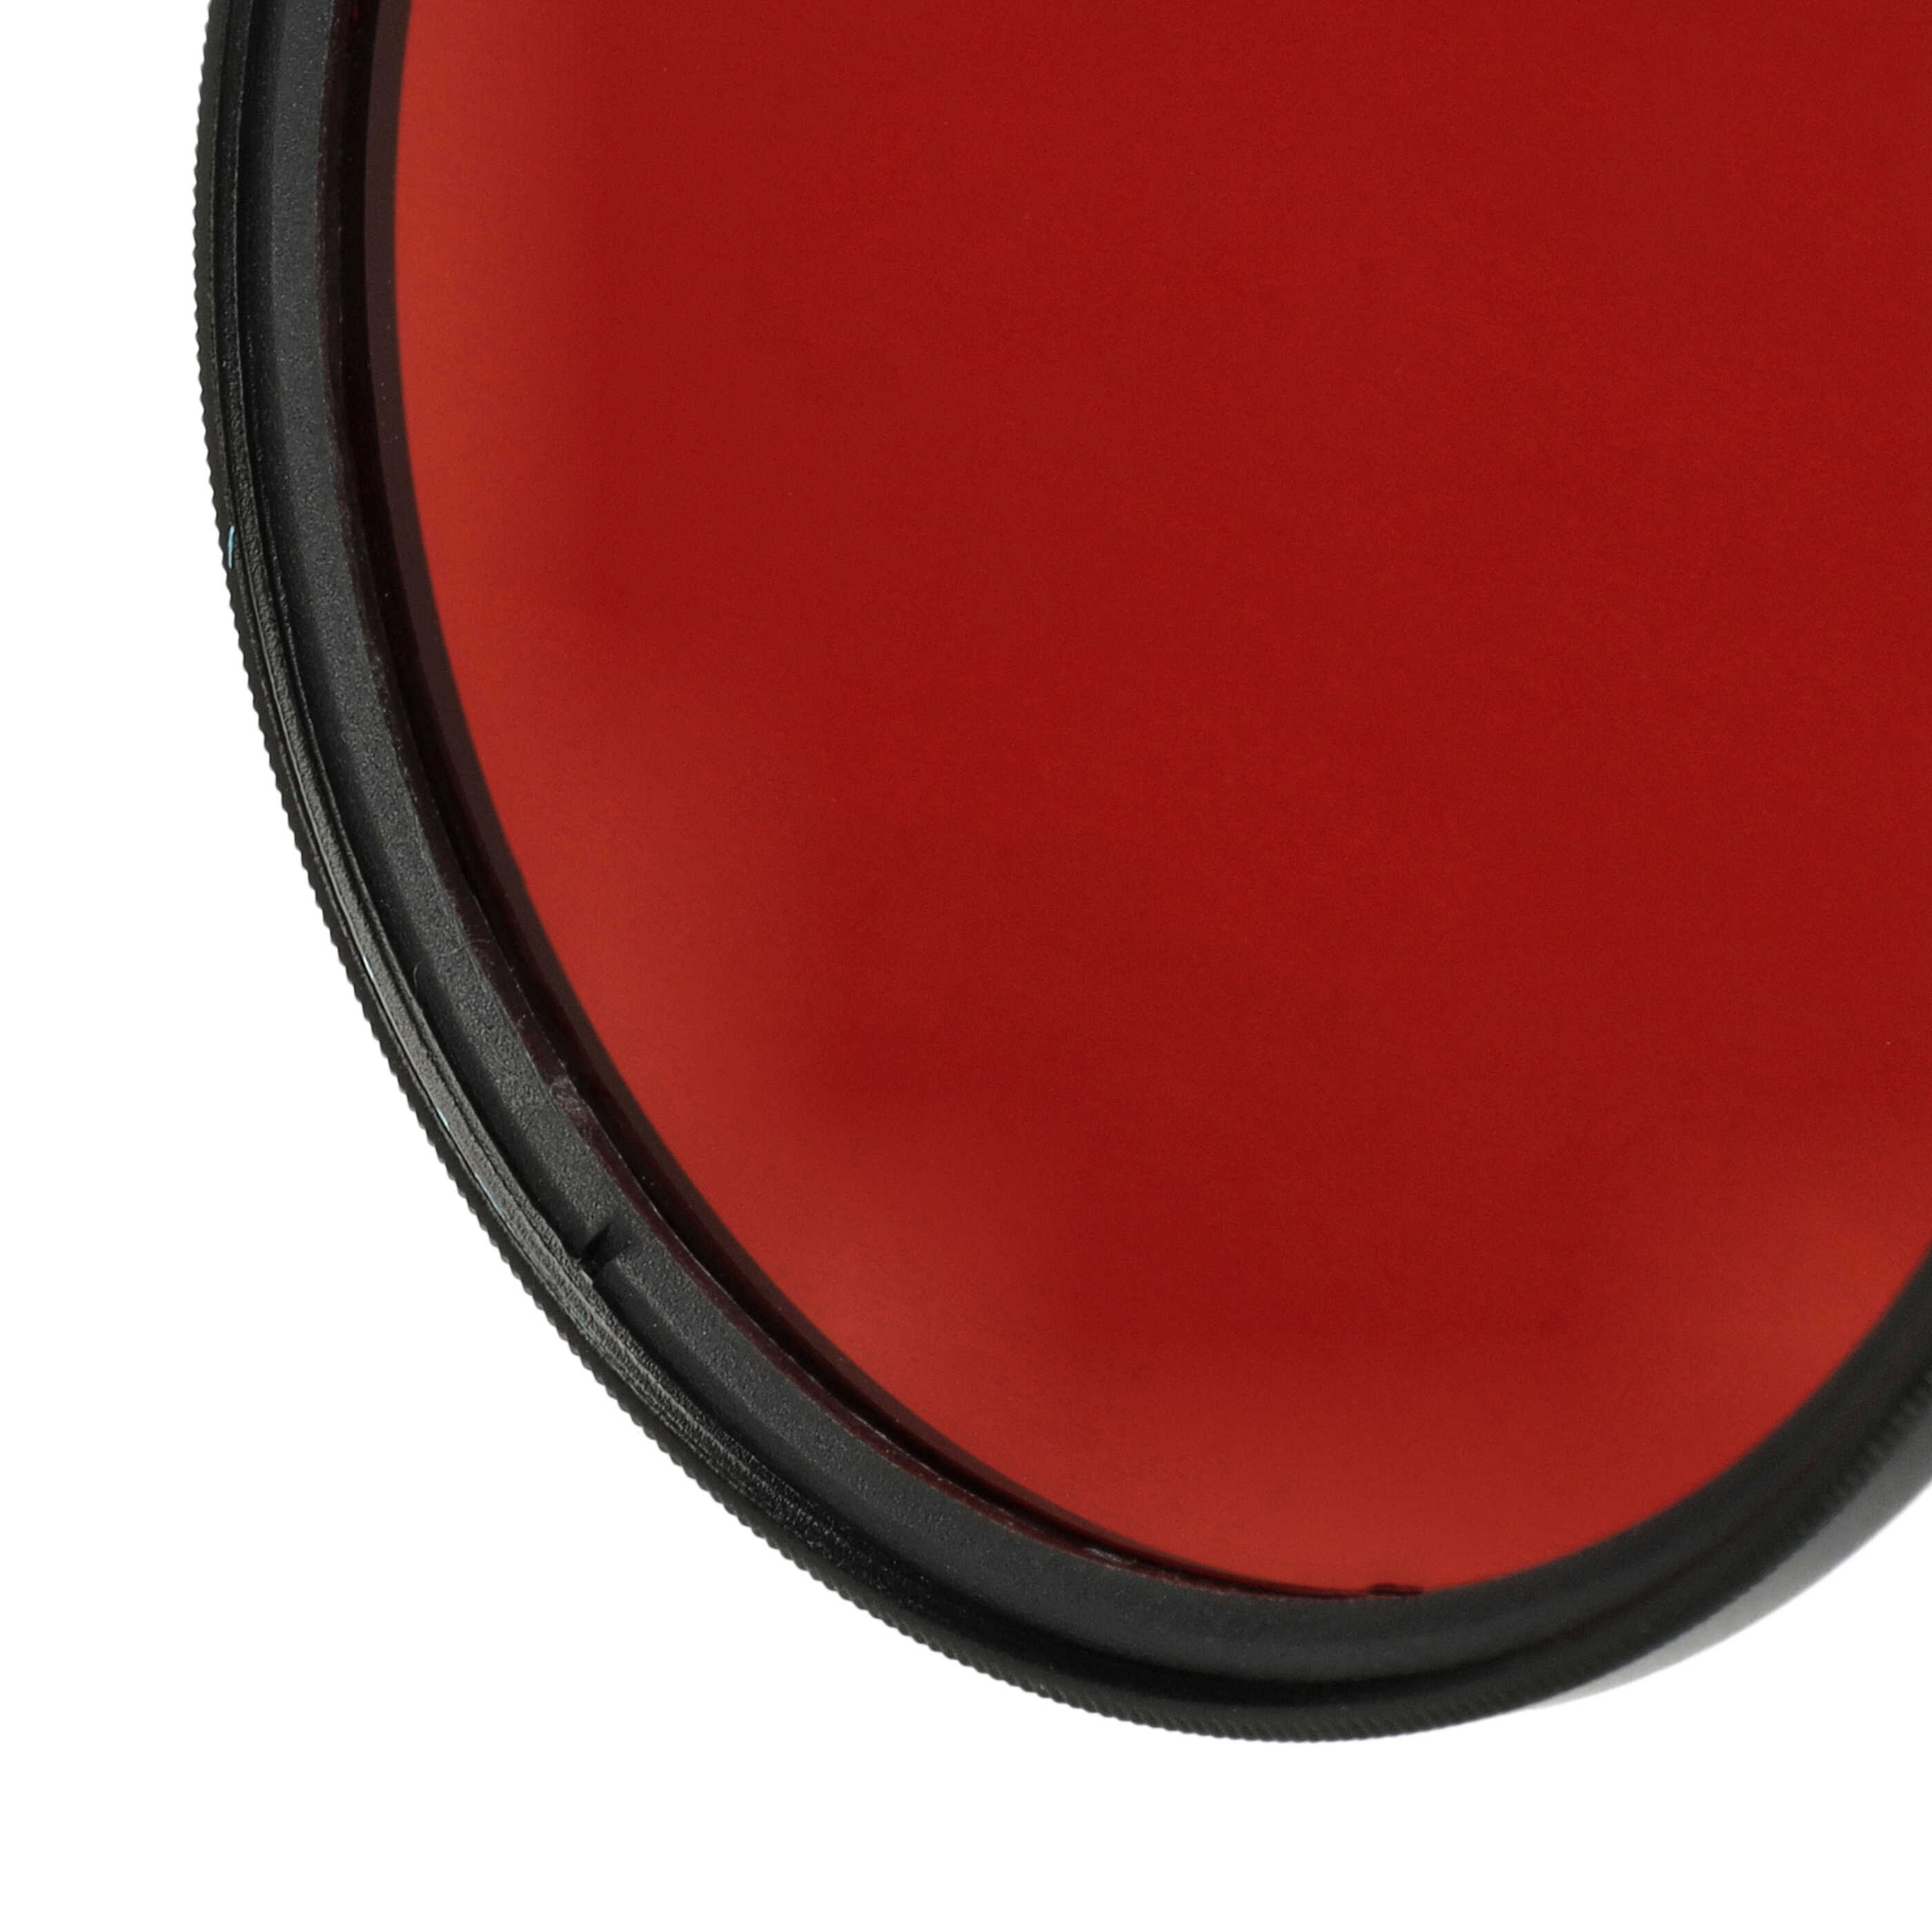 Farbfilter rot passend für Kamera Objektive mit 72 mm Filtergewinde - Rotfilter